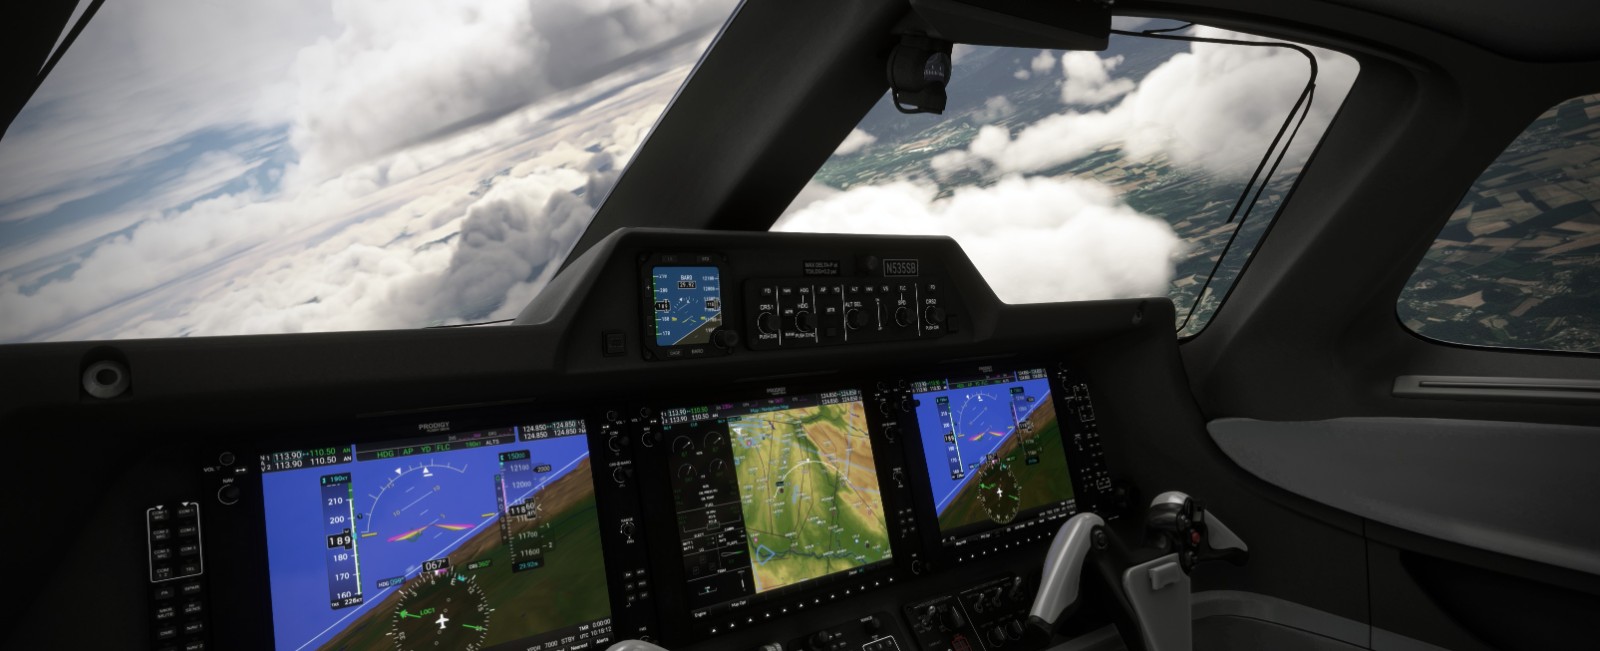 《微软飞行模拟》空客A300推出 飞鸿100测试中